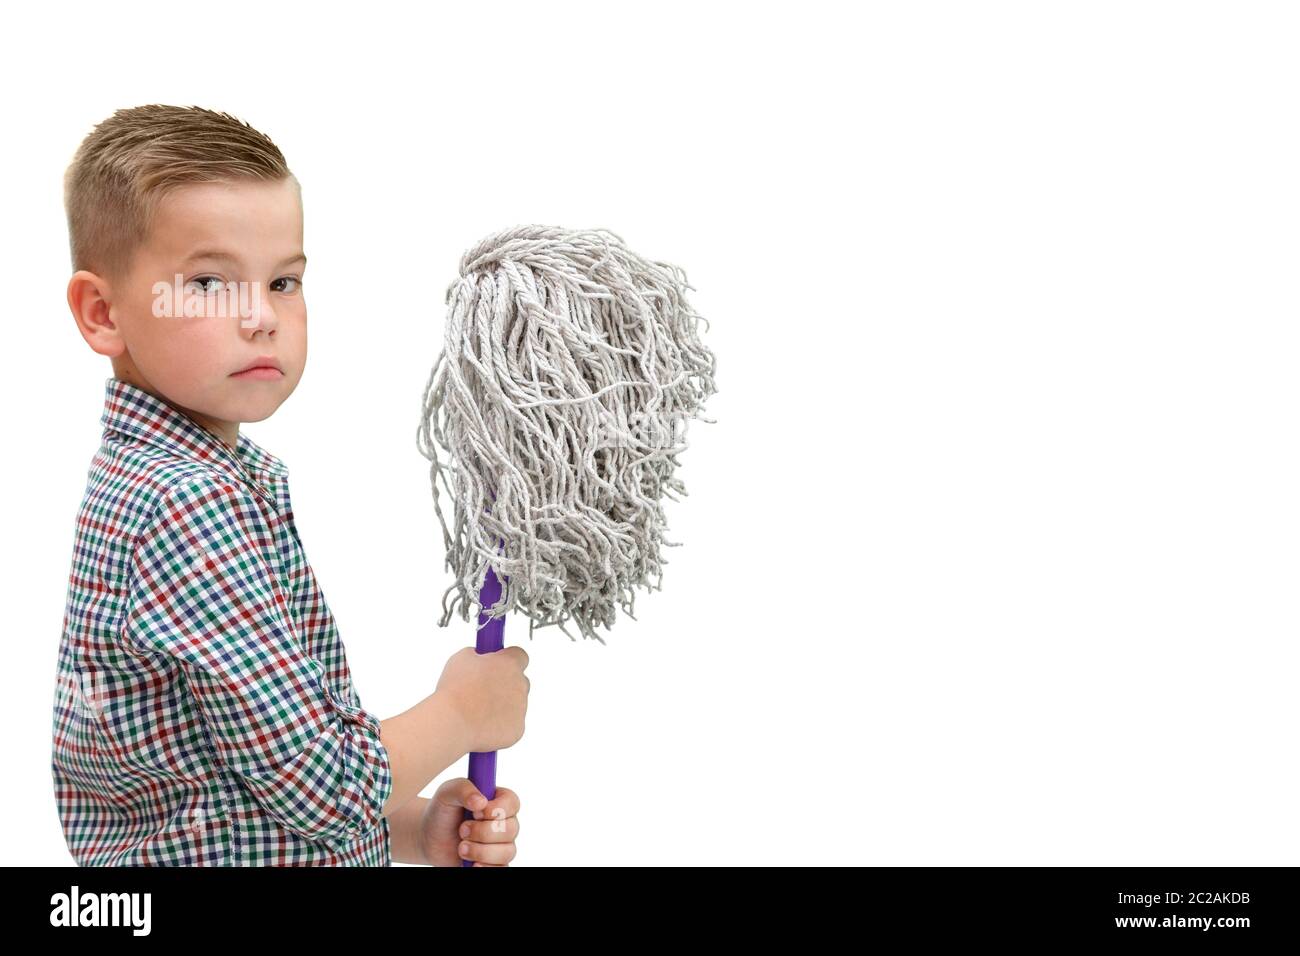 Un petit garçon chauve dans une chemise à carreaux sur un fond blanc est isolé avec un mop dans ses mains Banque D'Images